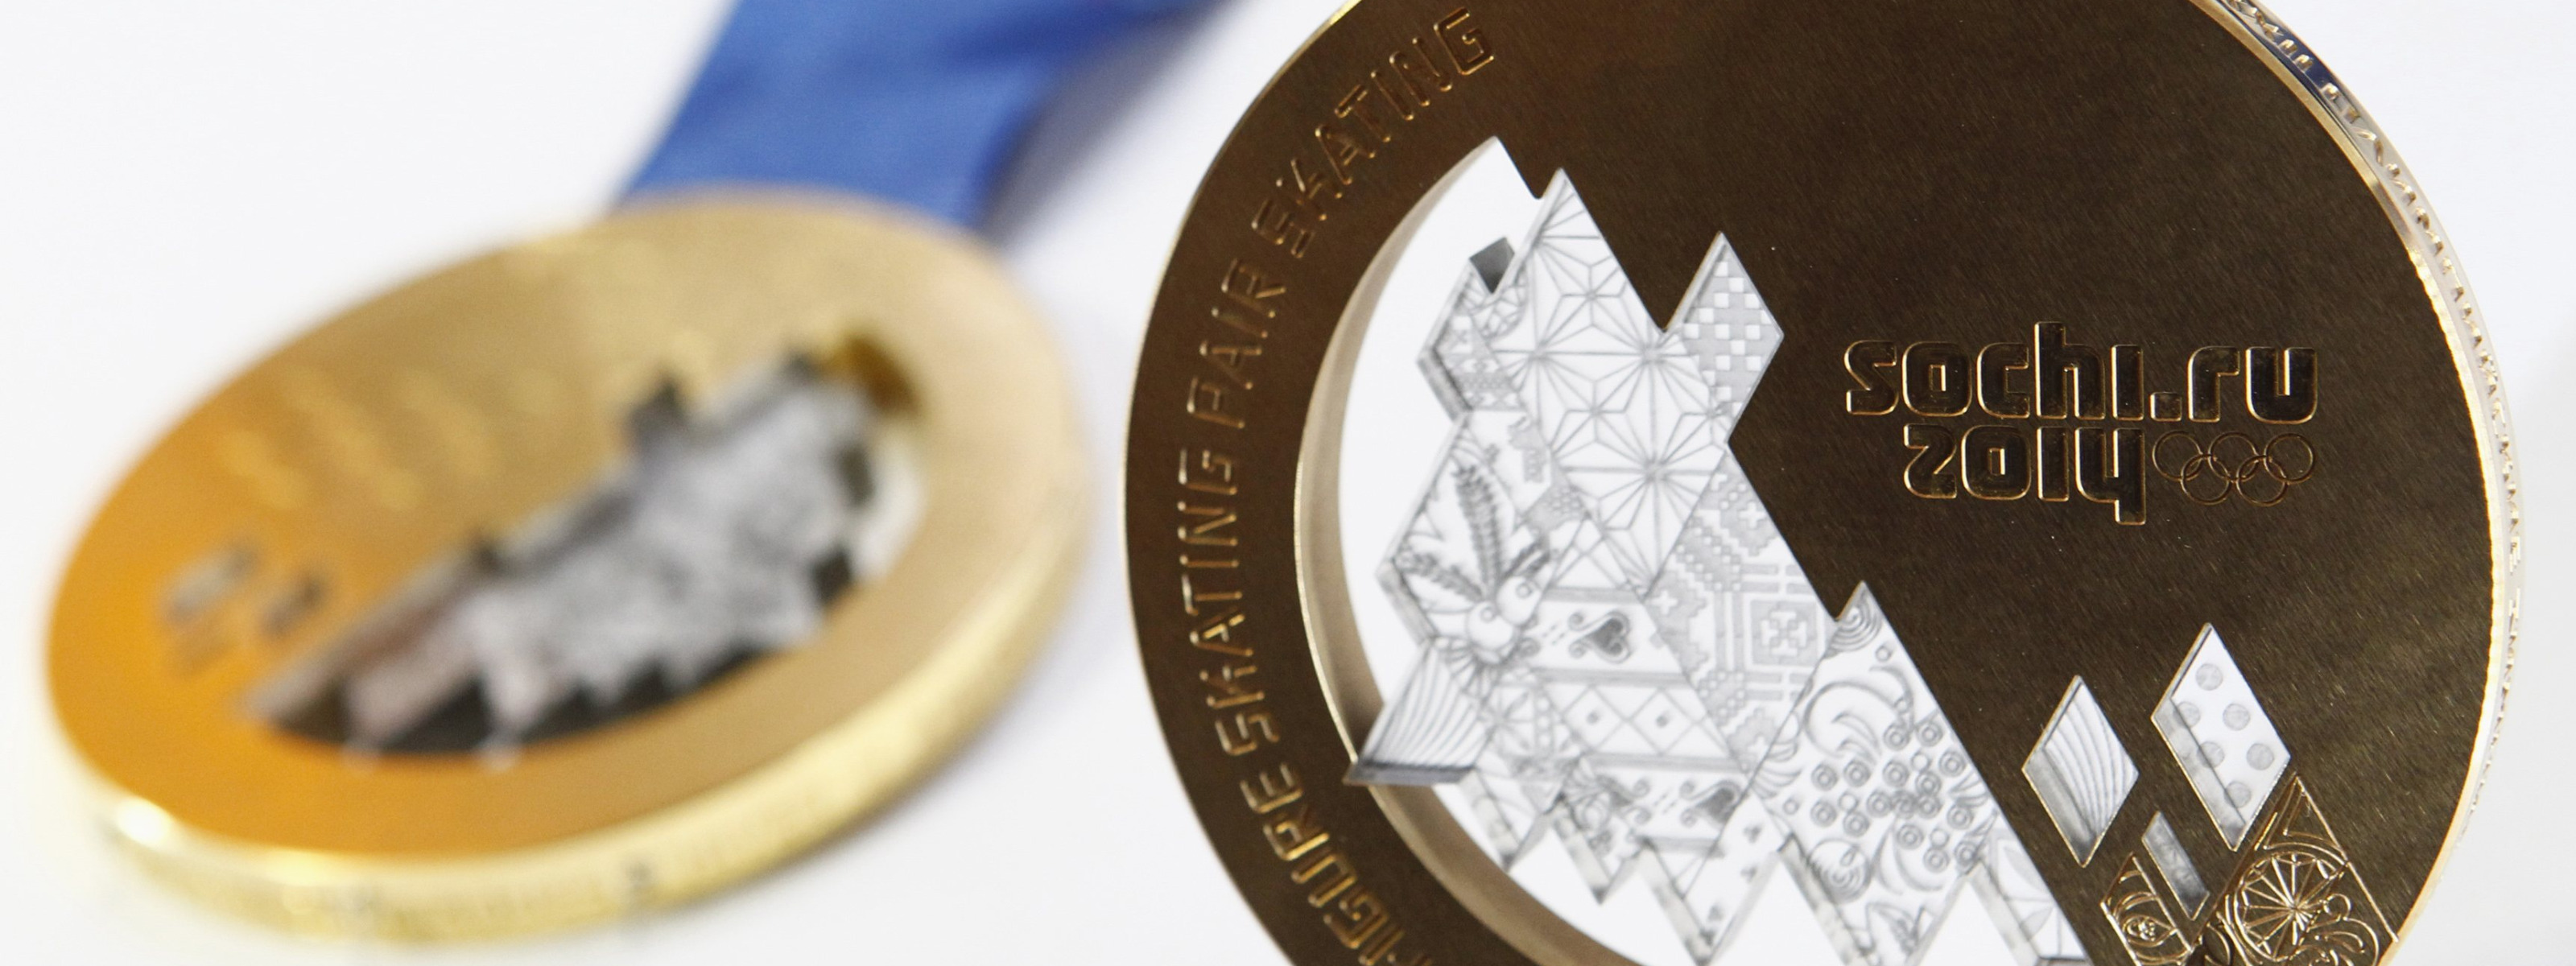 Бронзовая медаль Сочи. Медали Сочи 2014. Олимпийская Золотая медаль Сочи. Медали олимпиады 2014 бронза.